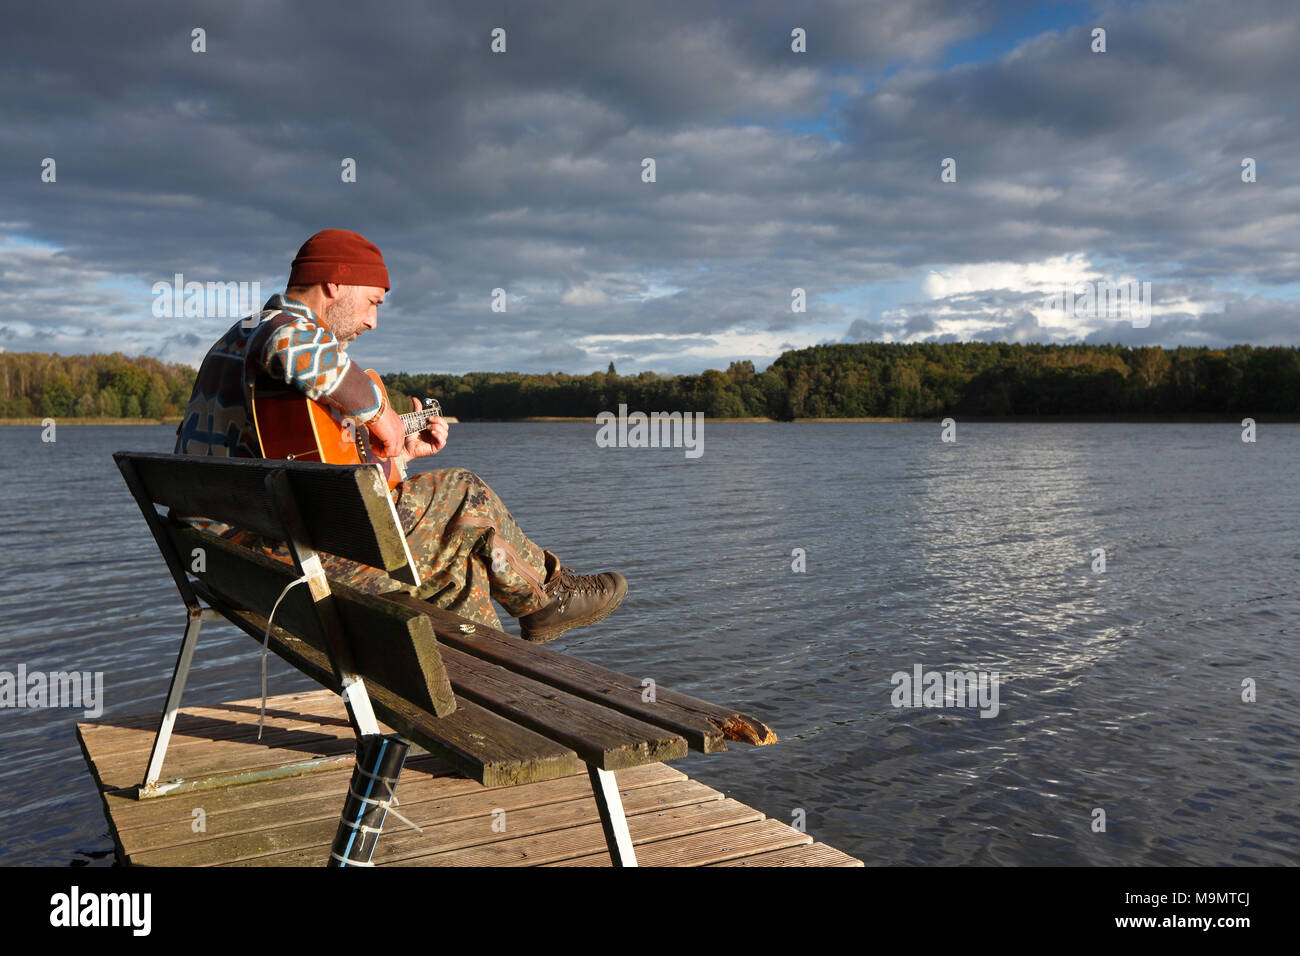 Der Mensch spielt Gitarre auf einem Boot Bootssteg am See, Mecklenburgische Seenplatte, Mecklenburg-Vorpommern, Deutschland Stockfoto